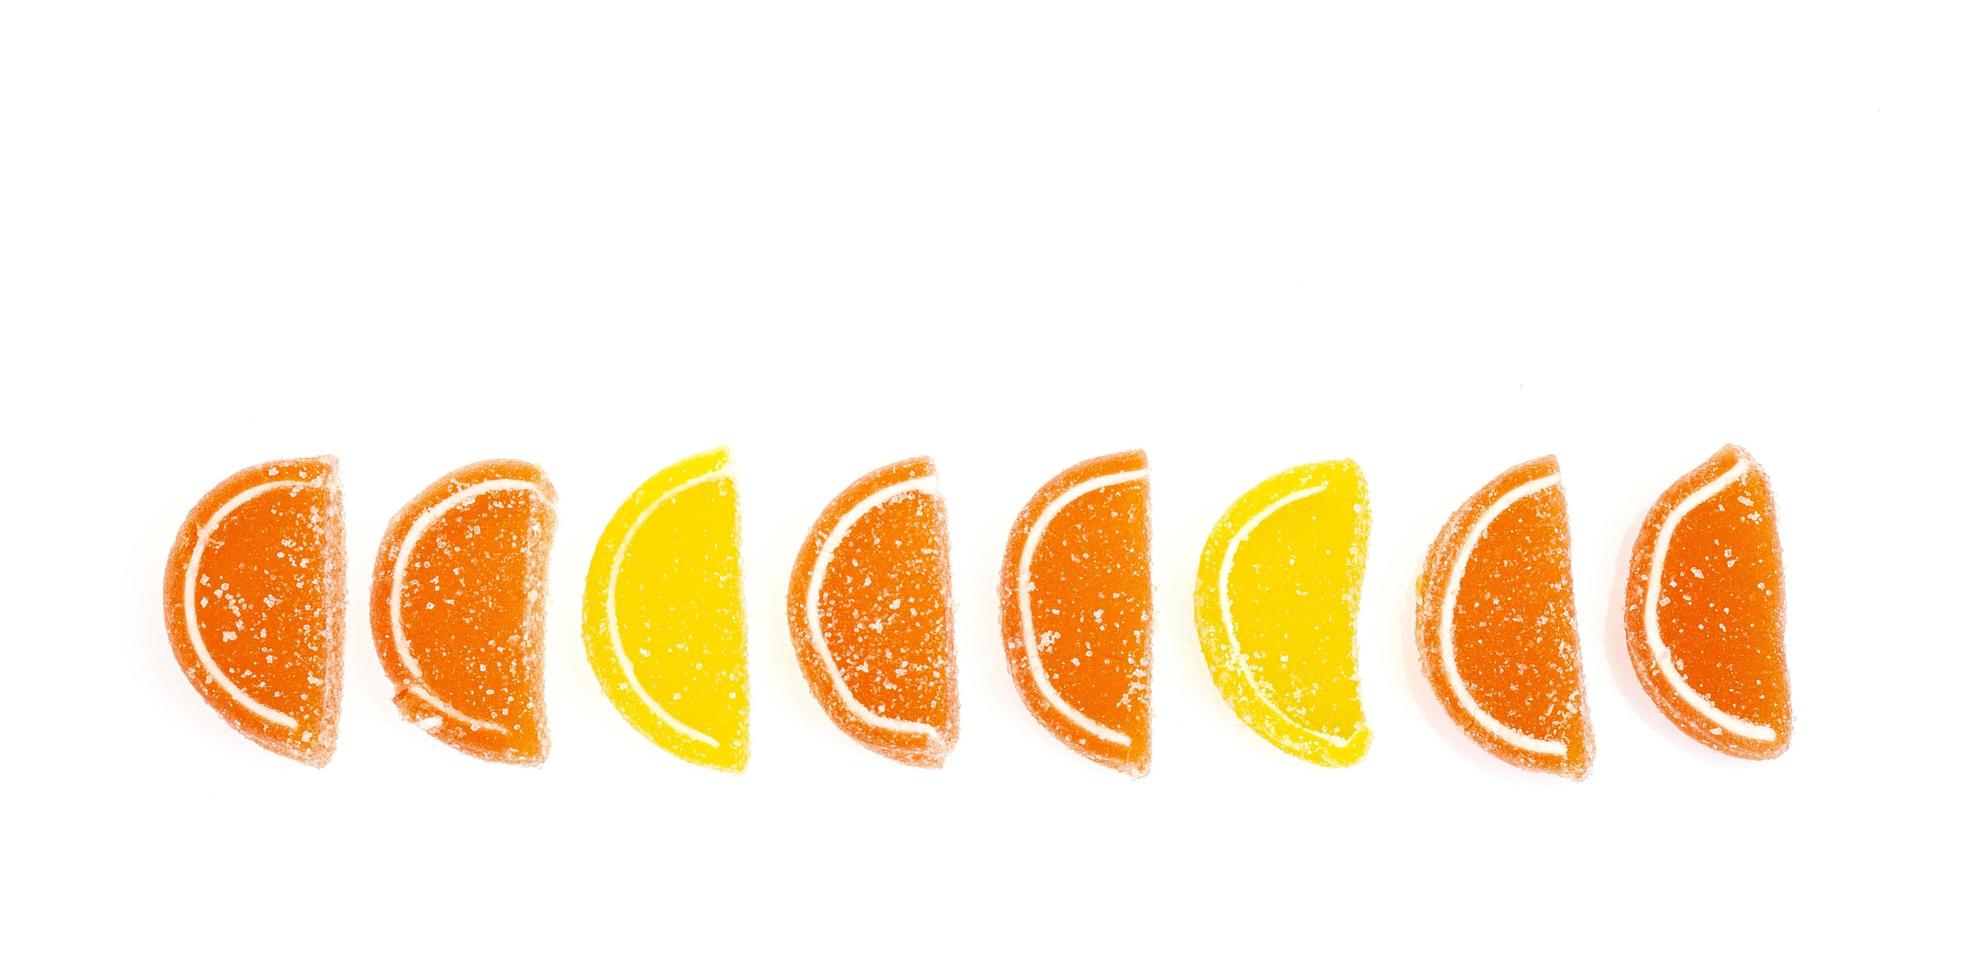 Oranje en gele plakjes zoete fruitmarmelade in suiker geïsoleerd op een witte achtergrond foto